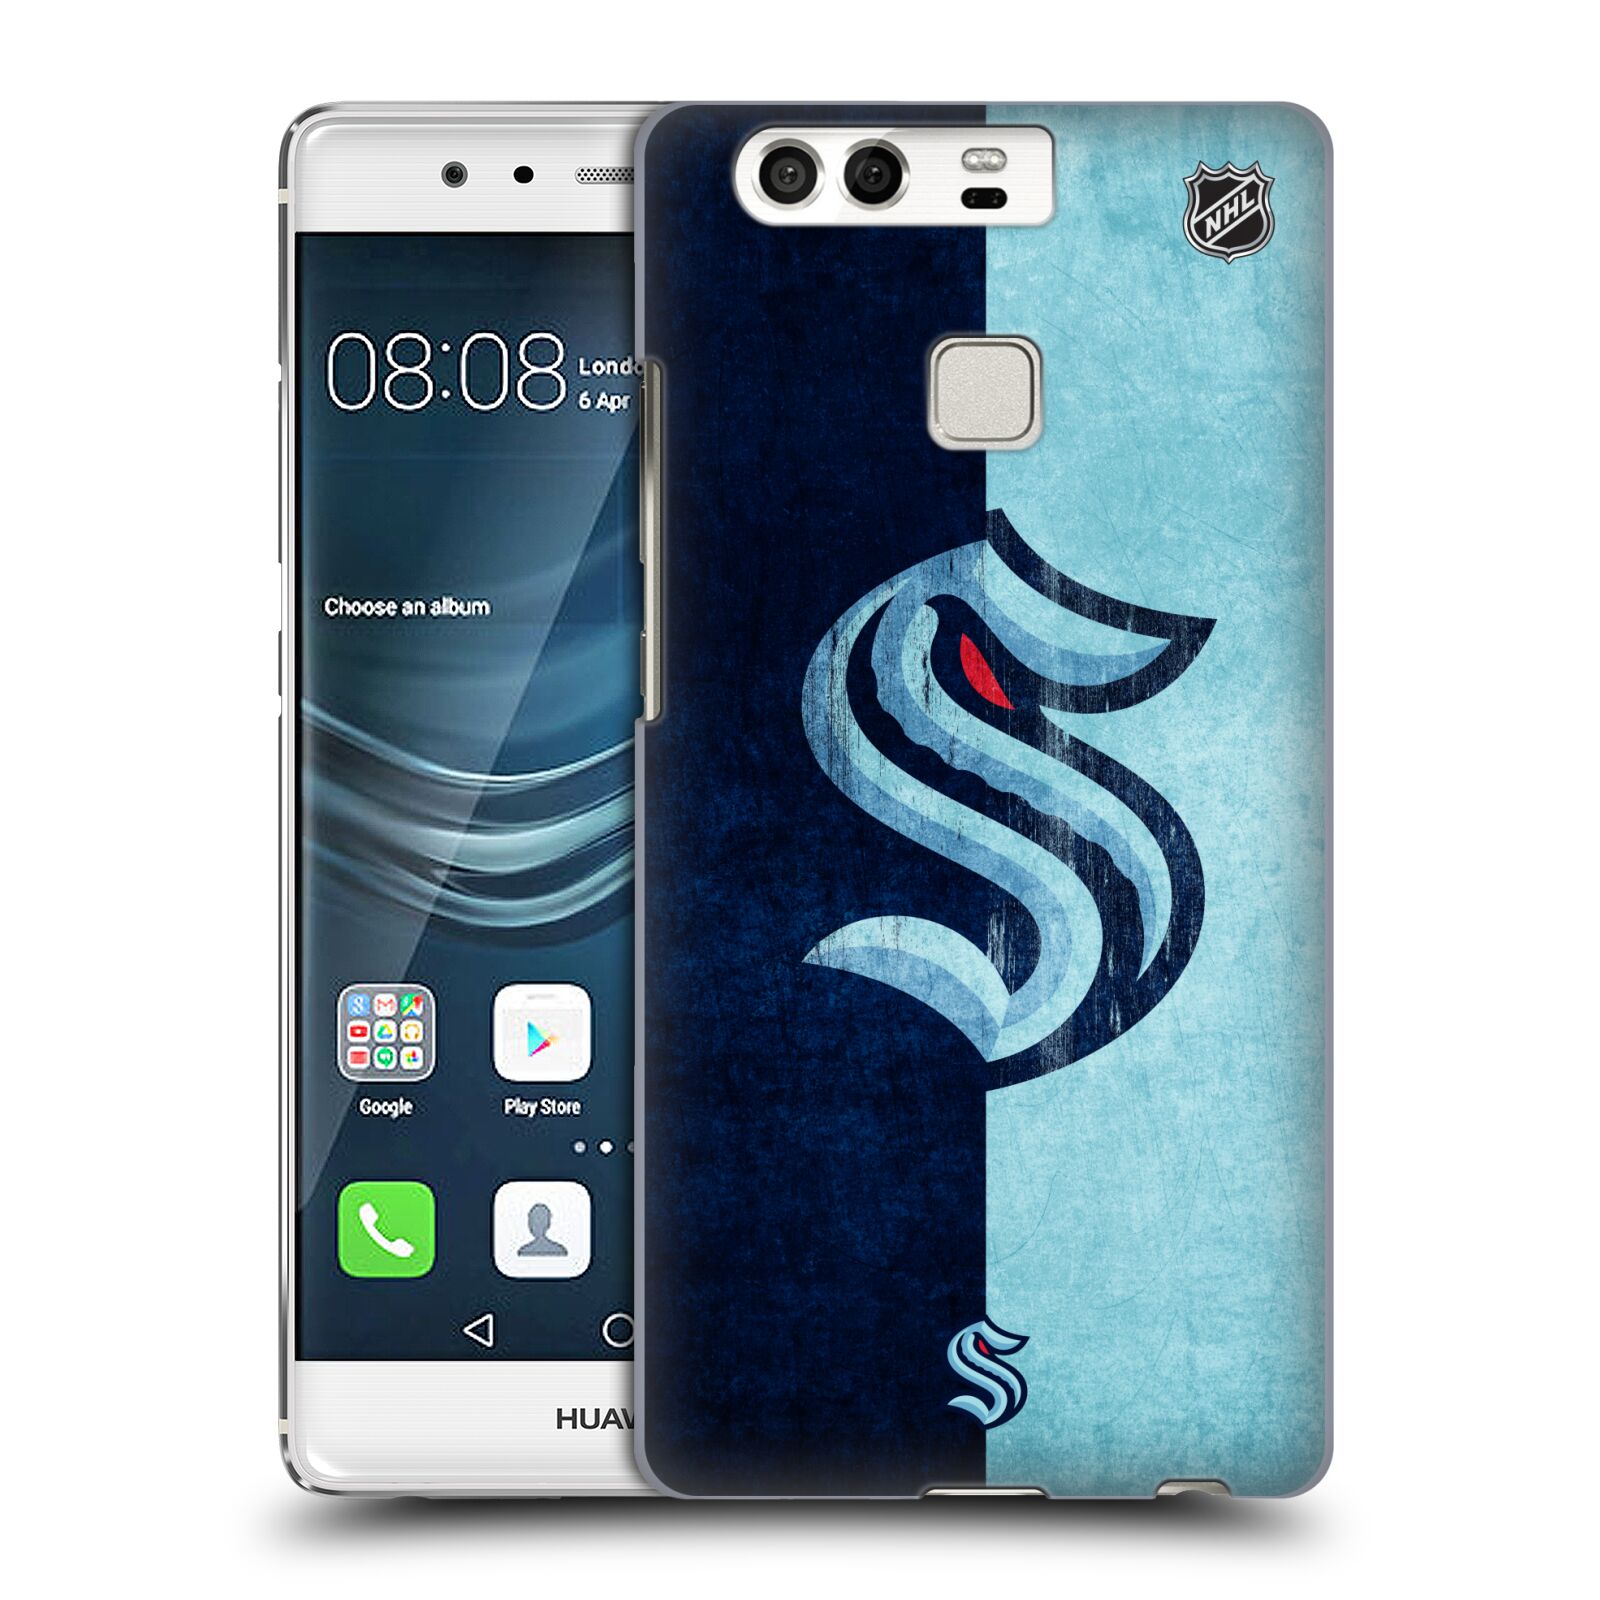 Pouzdro na mobil Huawei P9 / P9 DUAL SIM - HEAD CASE - Hokej NHL - Seattle Kraken - Velký znak